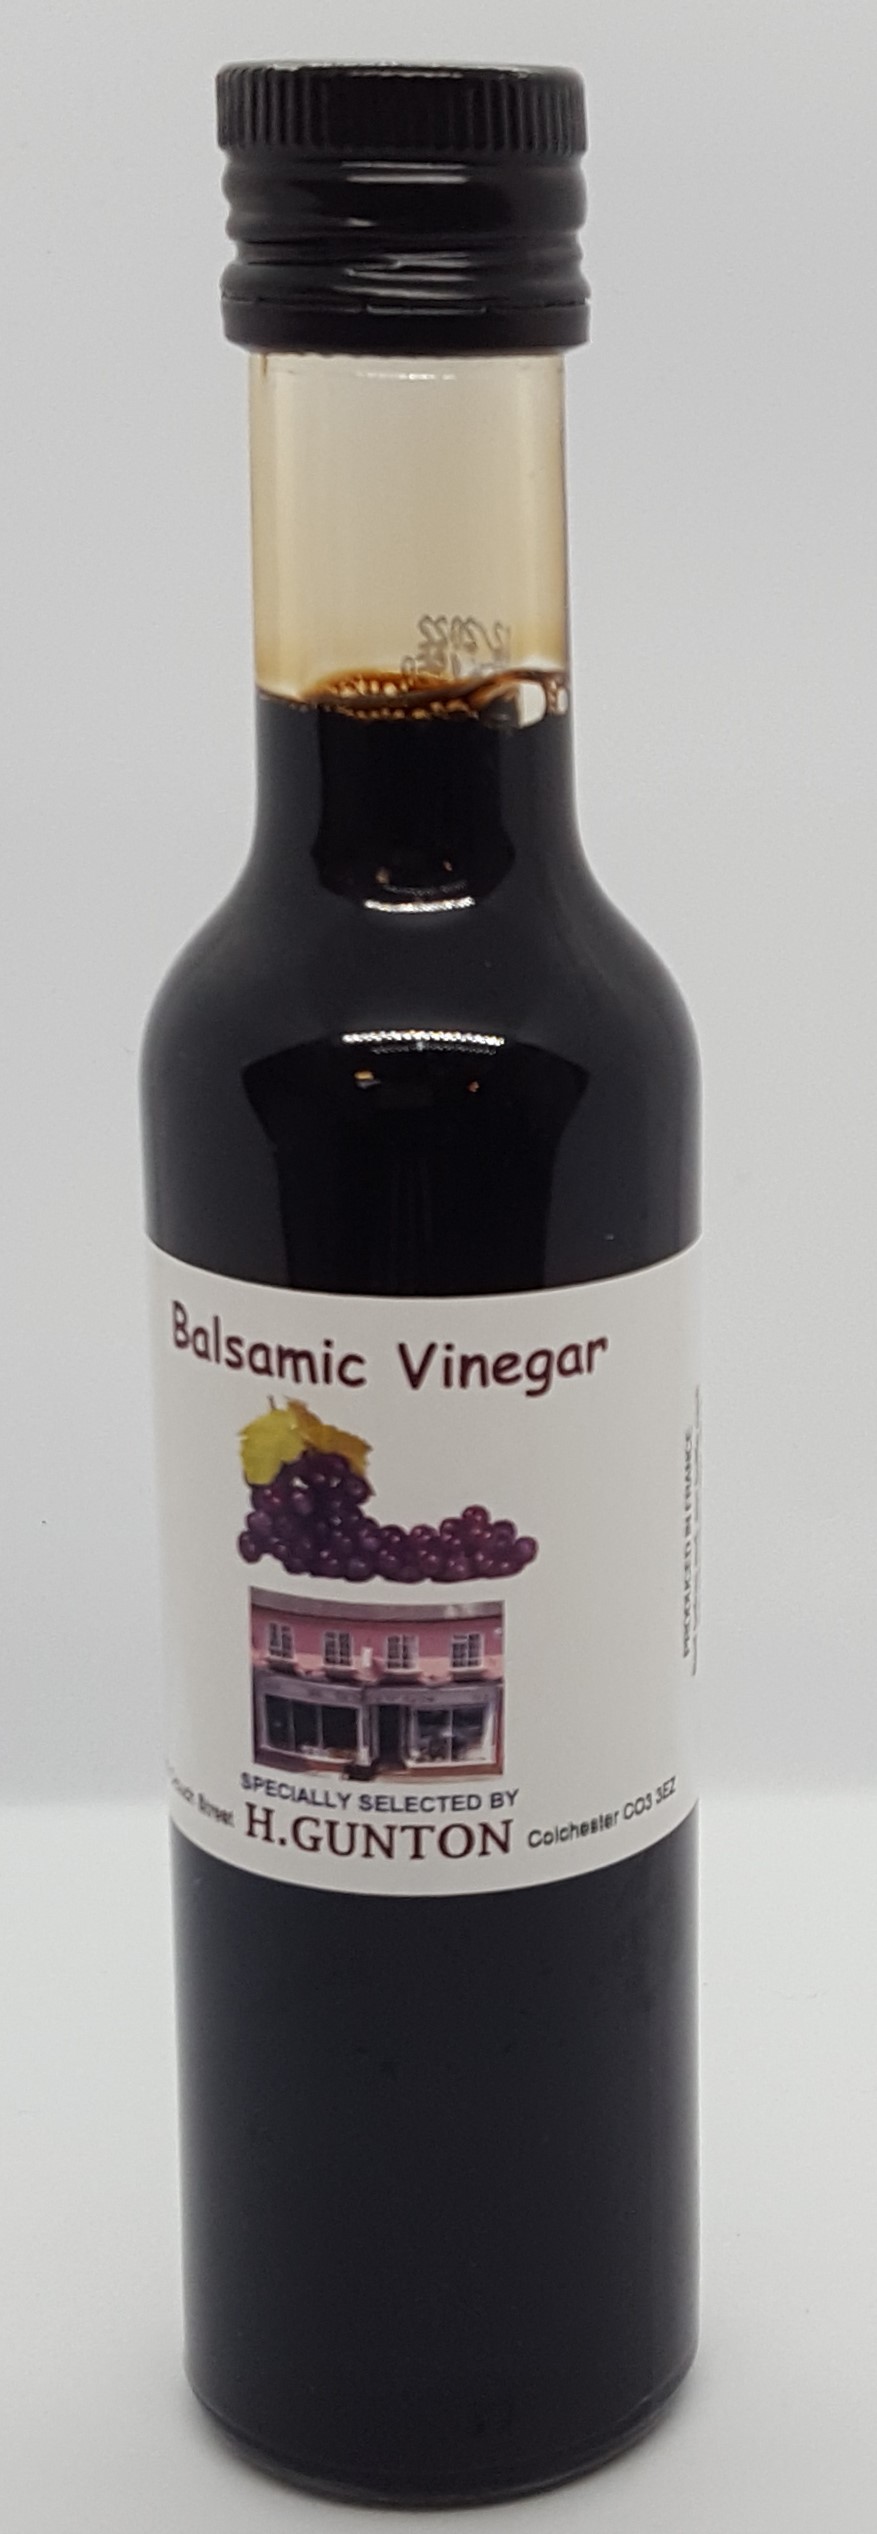 Guntons Balsamic Vinegar